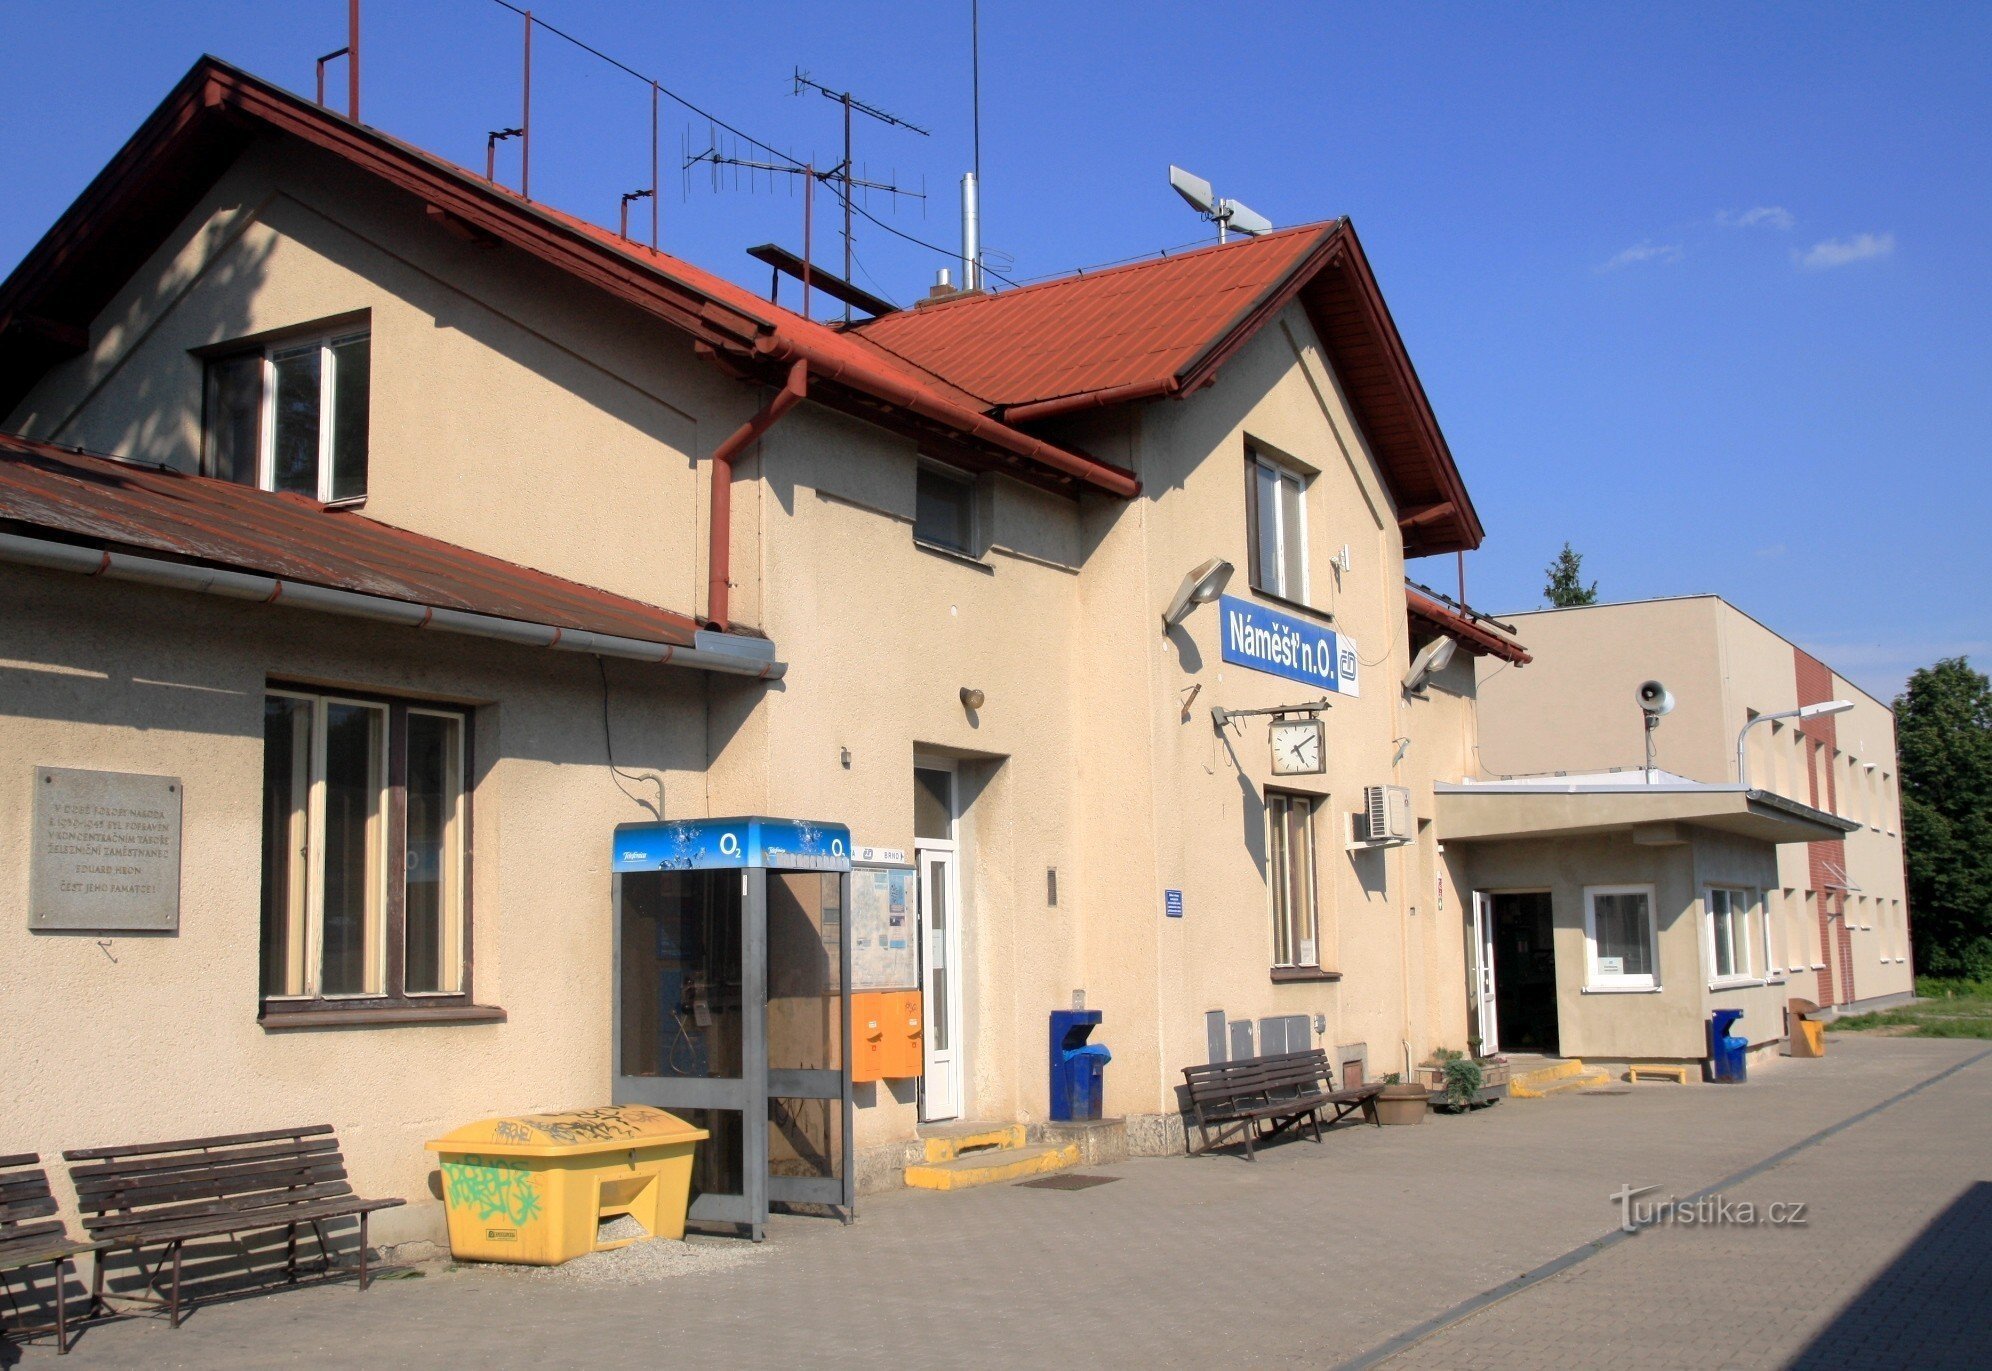 Náměšť nad Oslavou - stacja kolejowa